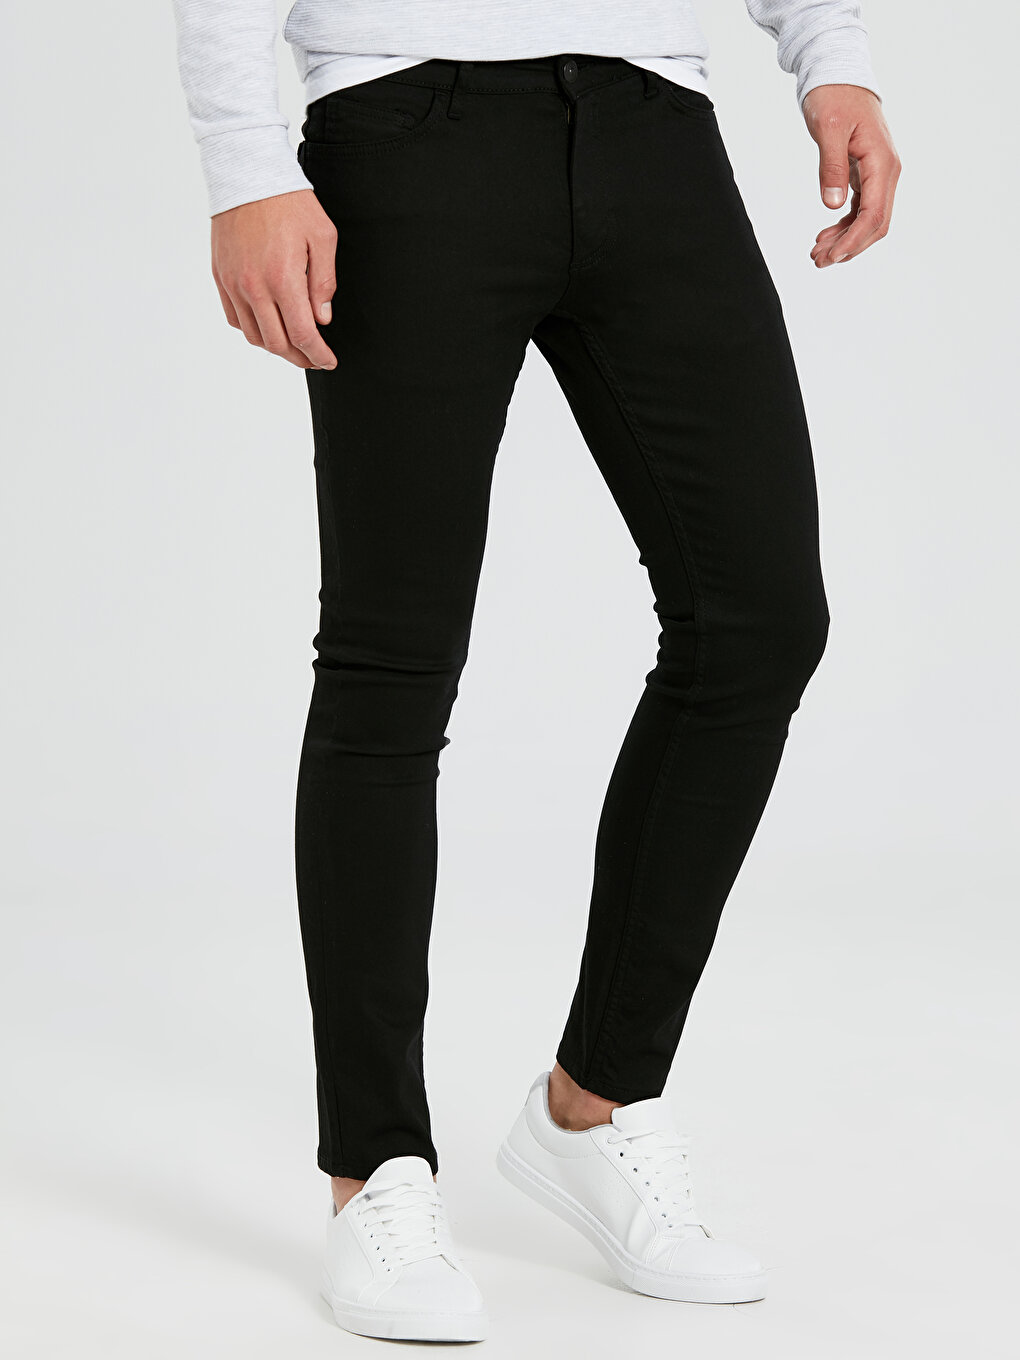 760 Skinny Fit Men's Denim Trousers -0S0184Z8-326 - 0S0184Z8-326 - LC ...